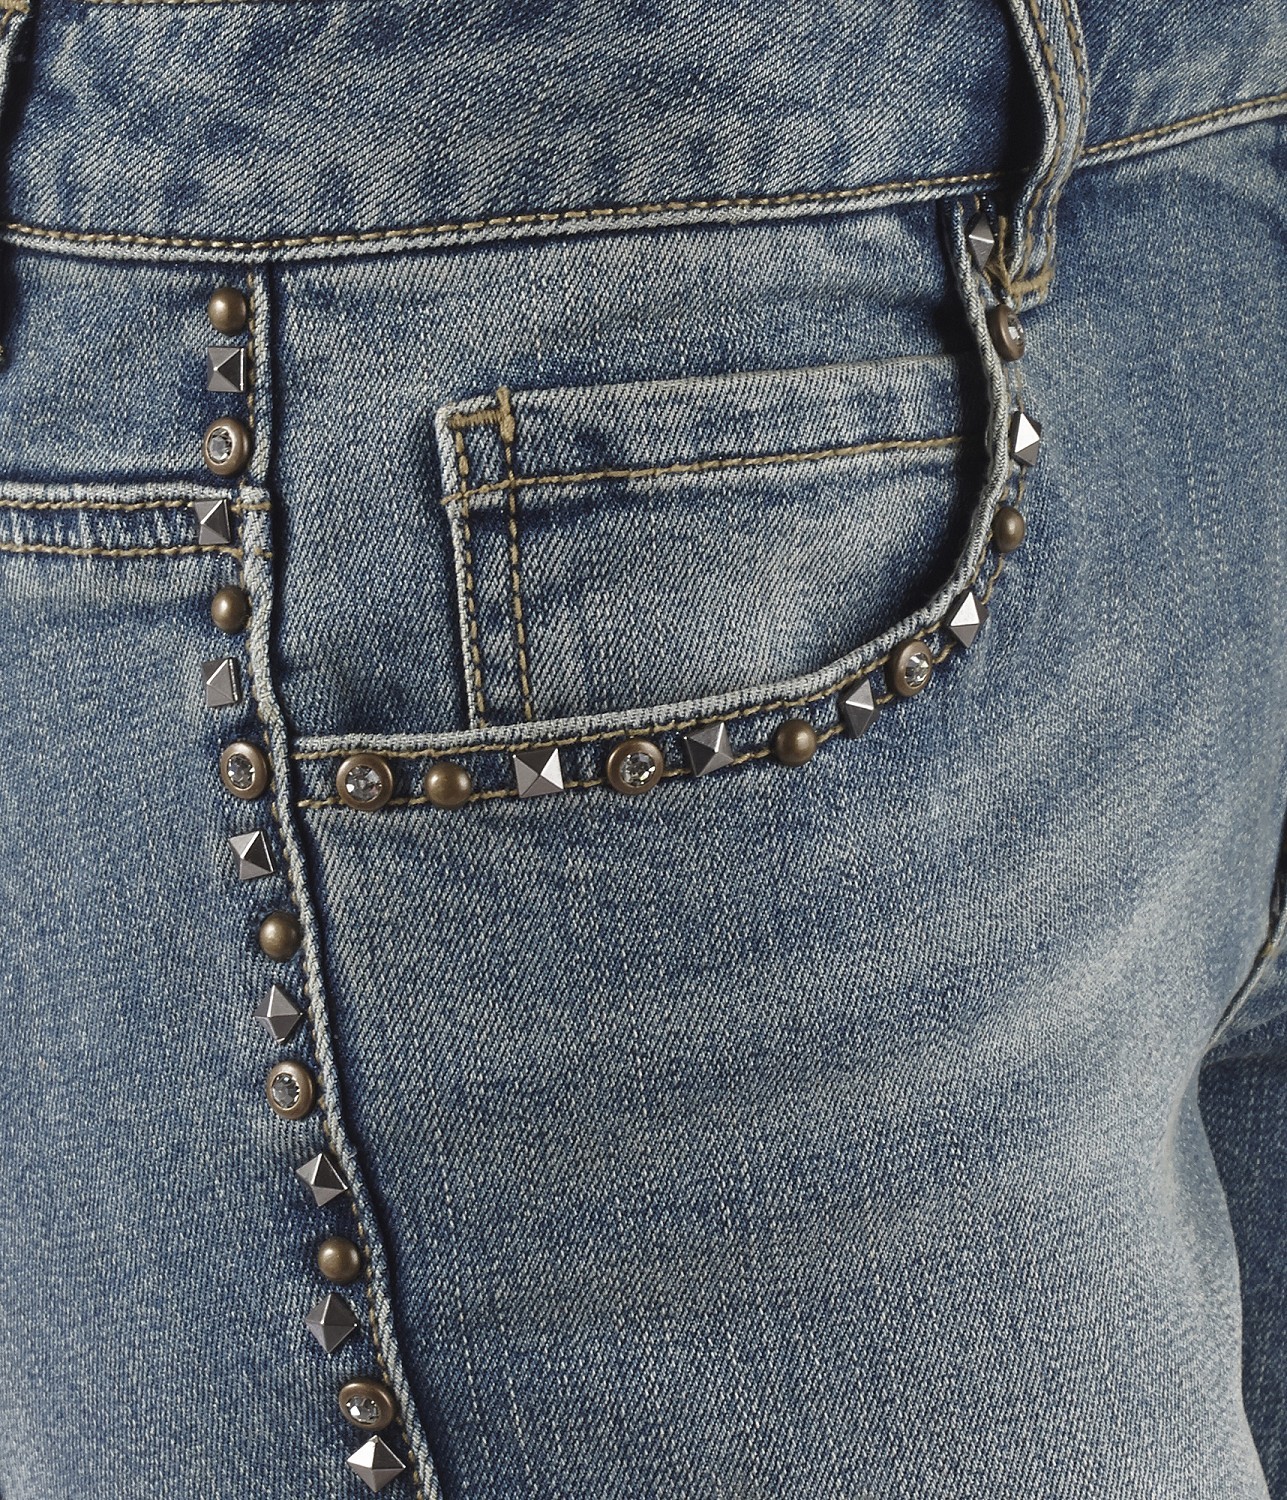 Camaieu koptatott márkás nadrág nadrág 2013.8.9 fotója